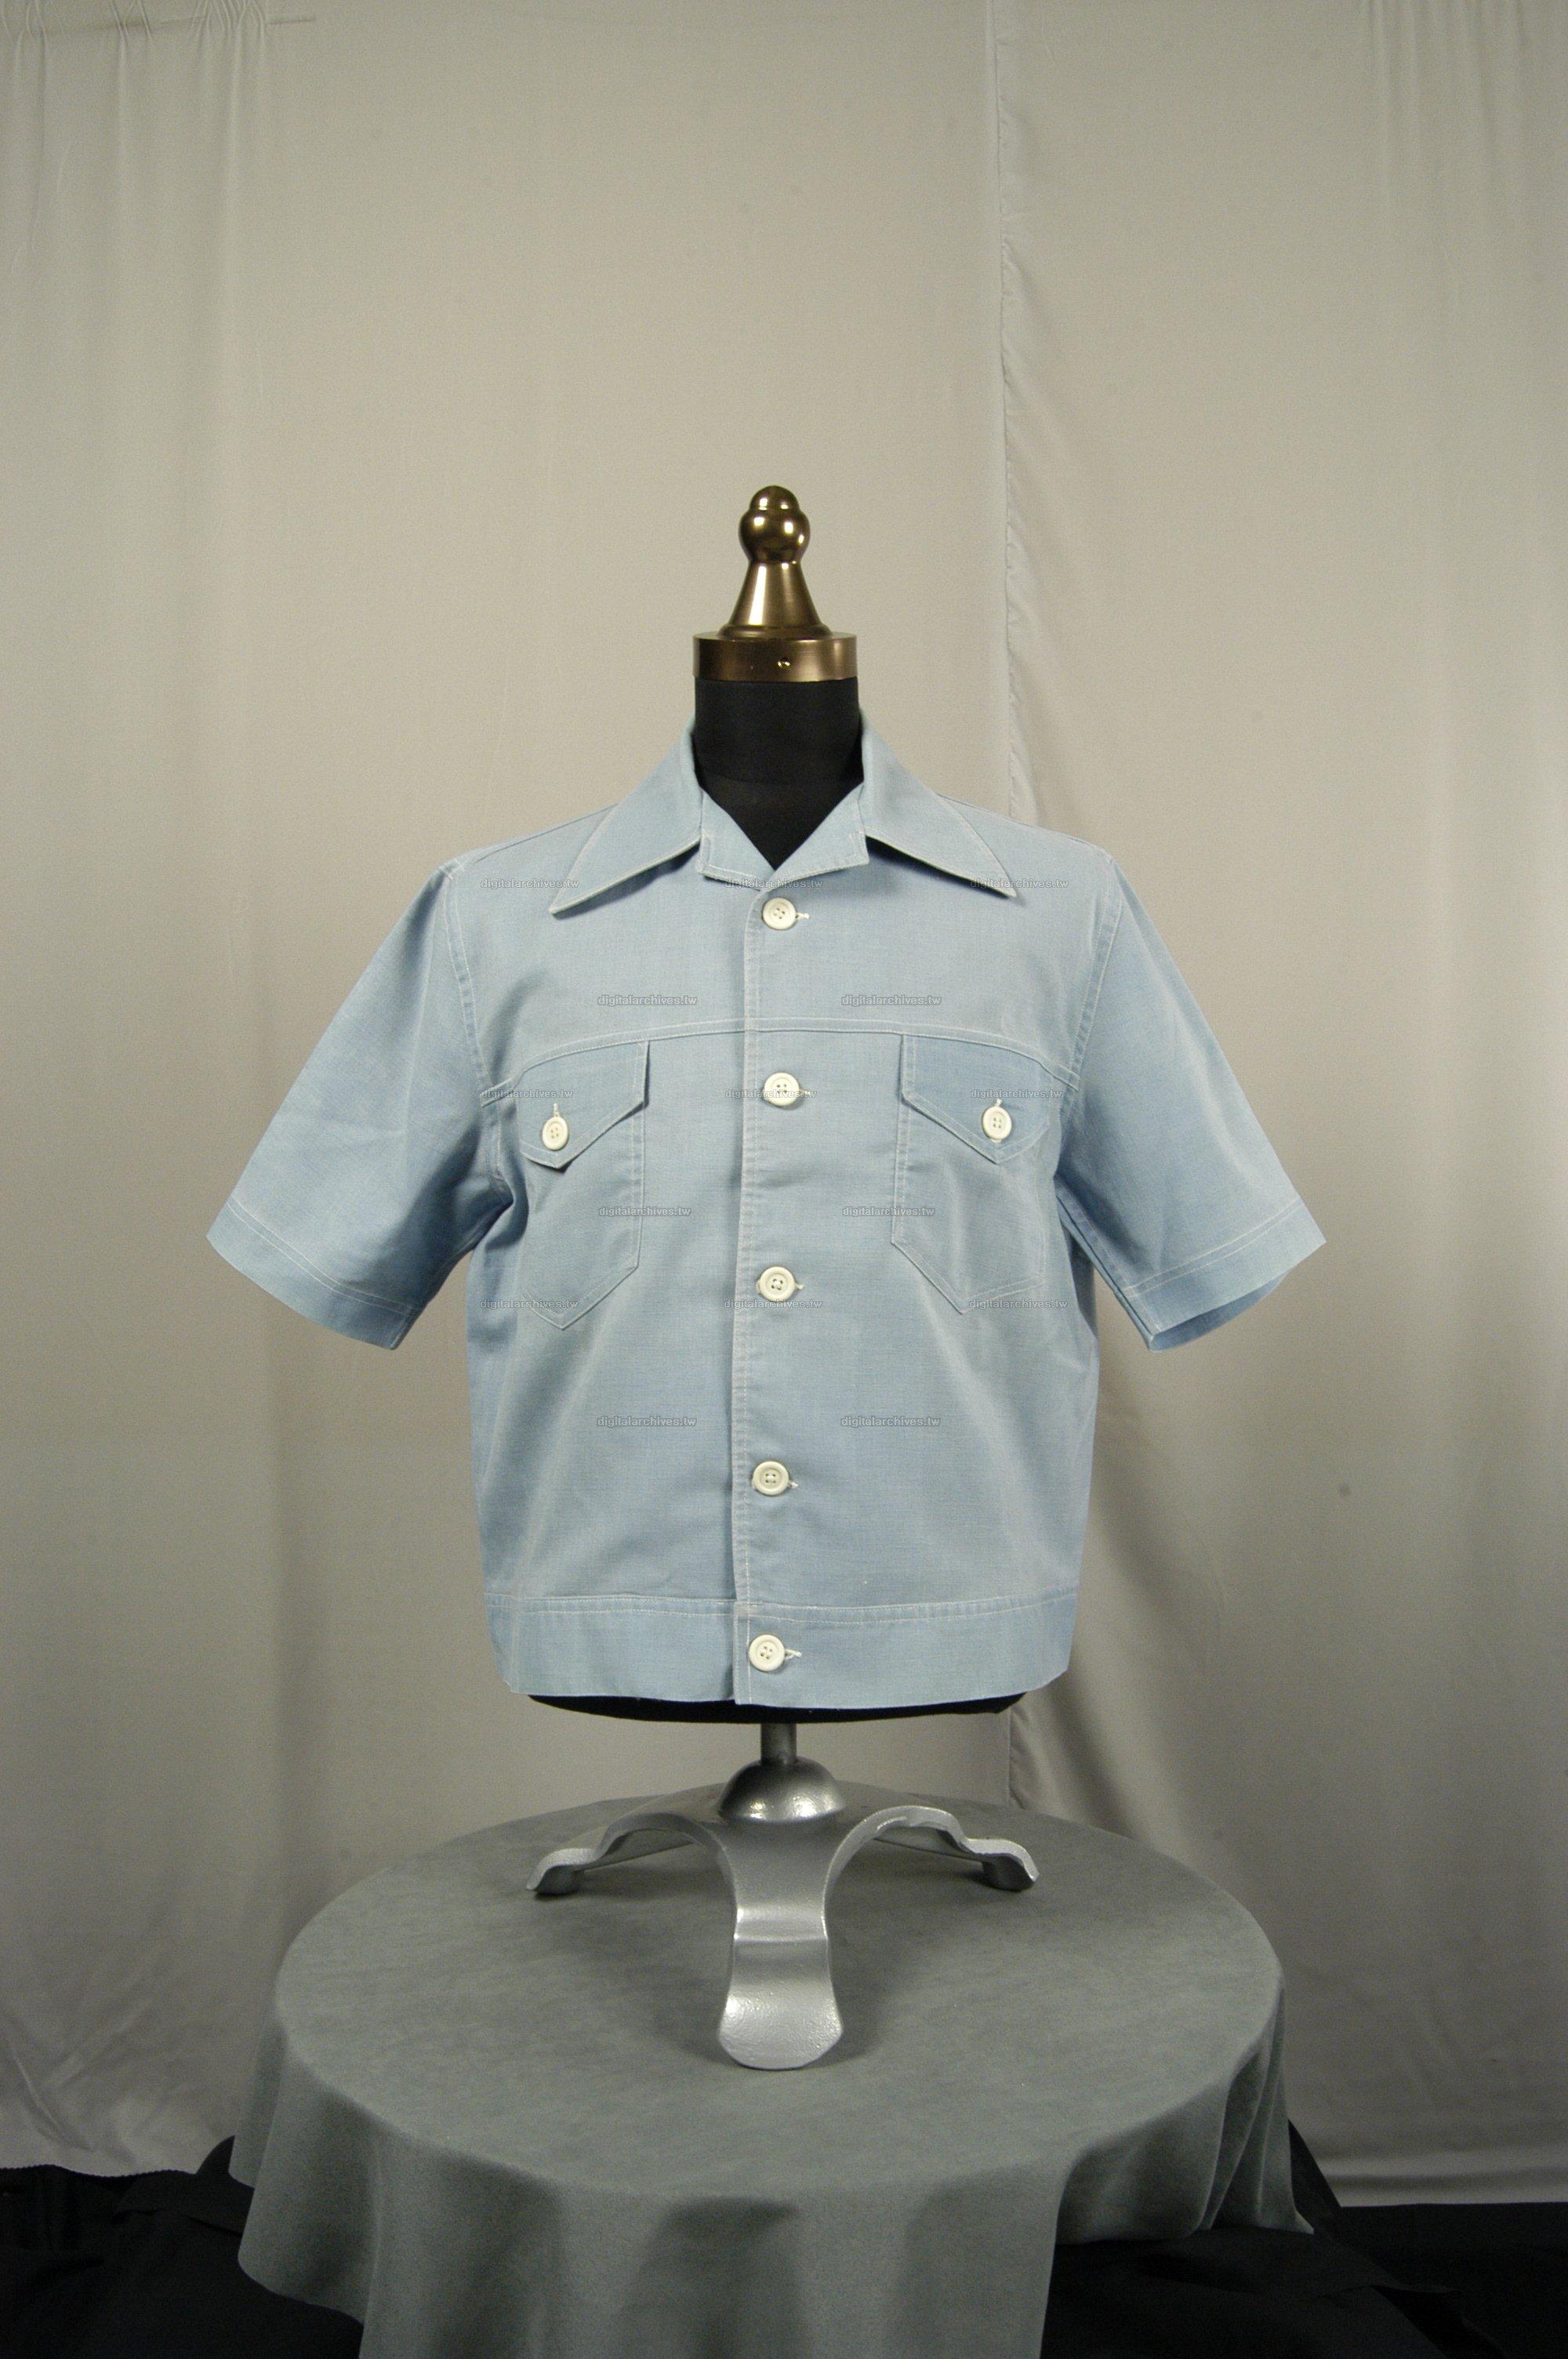 藏品名稱:淺藍短袖混紡襯衫(入藏登錄號005000000036C)件名:淺藍短袖混紡襯衫